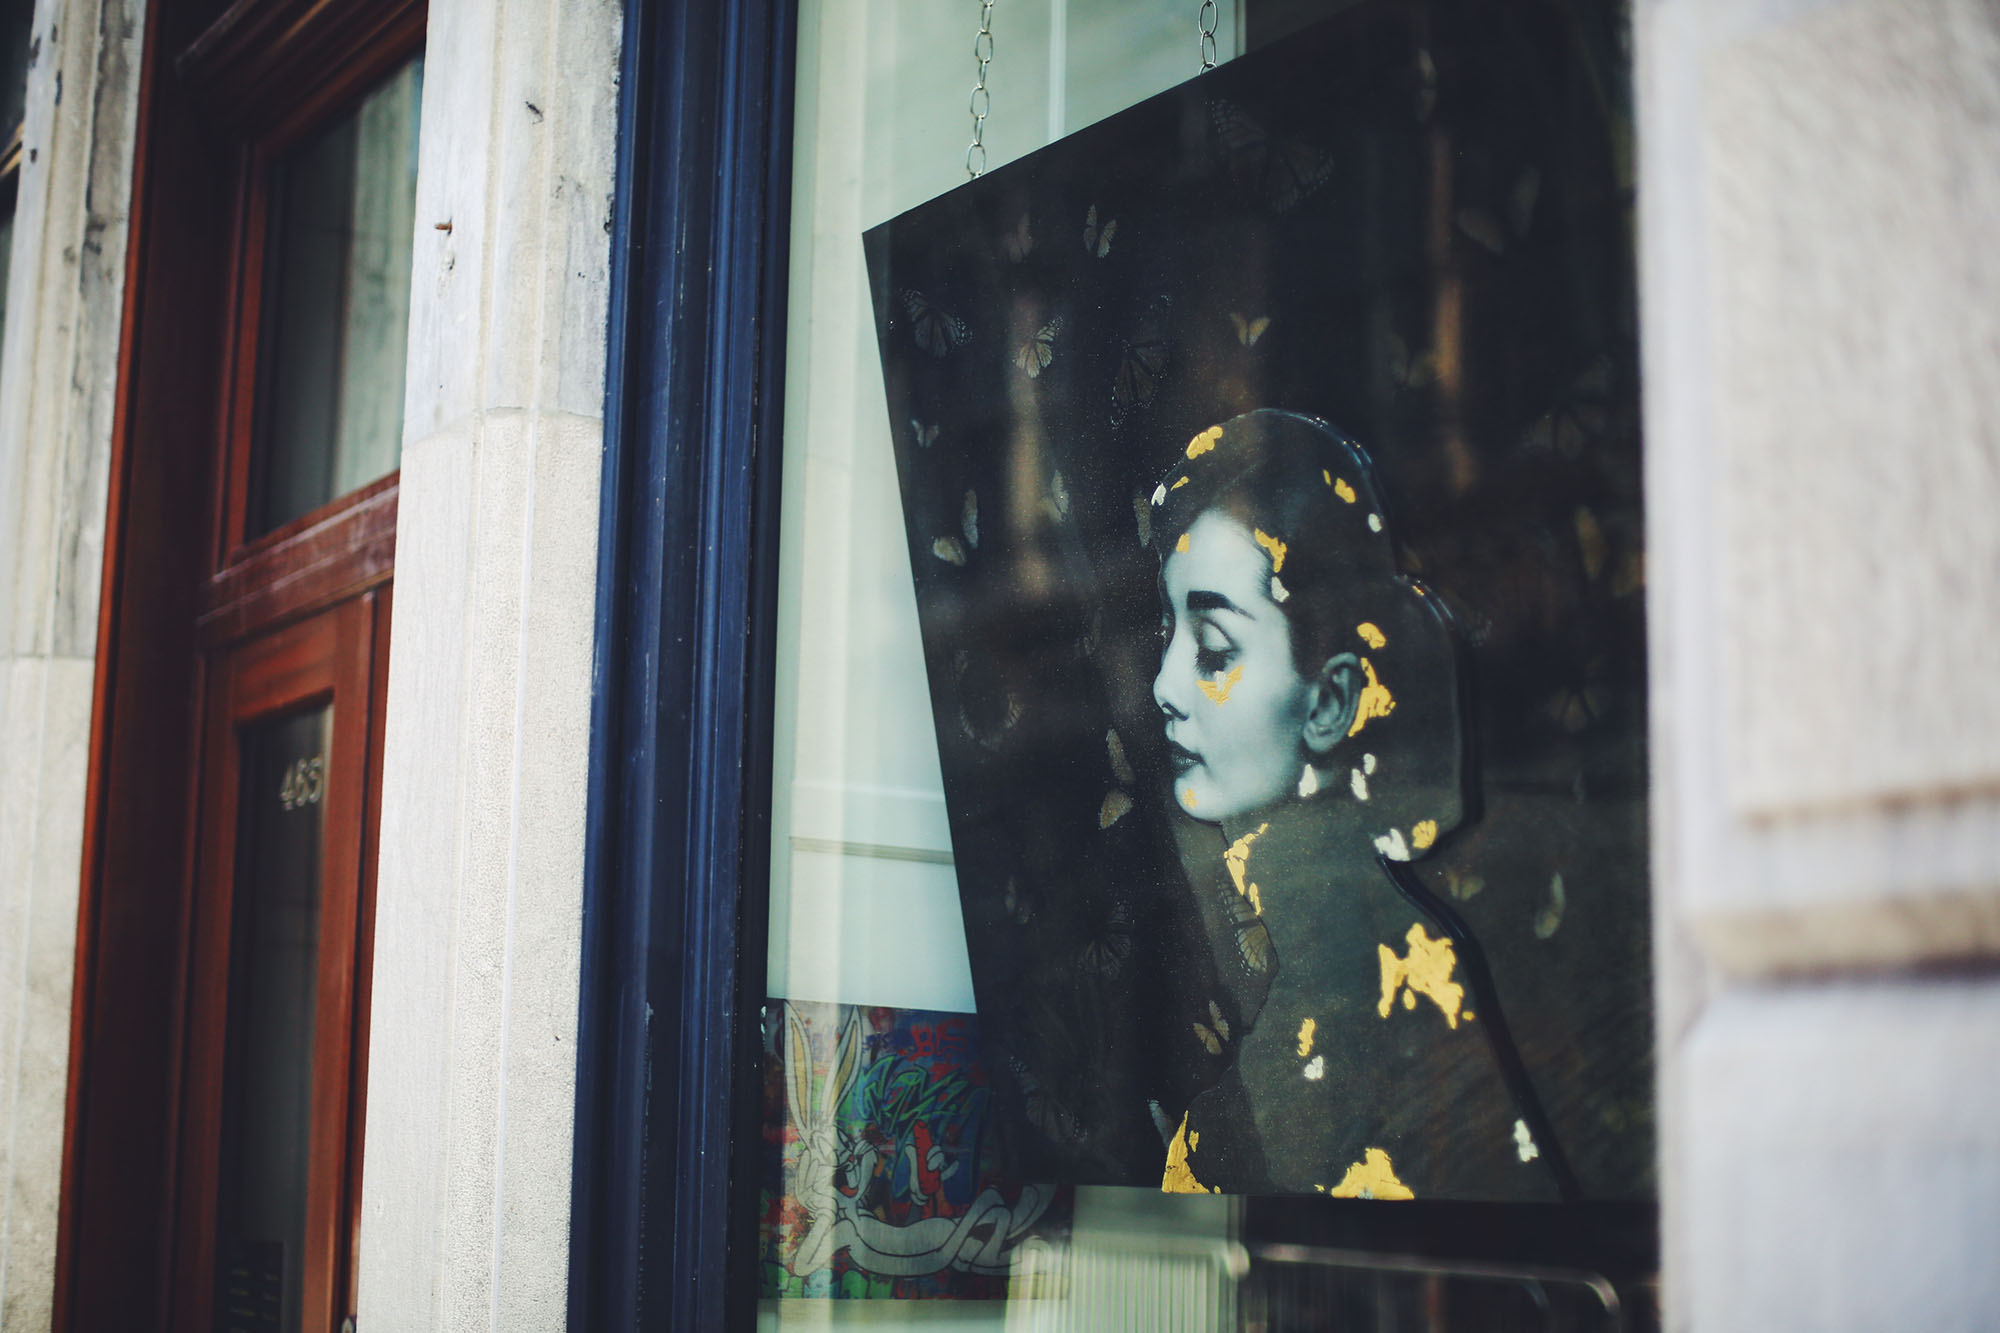 Poster of Audrey Hepburn in urban background